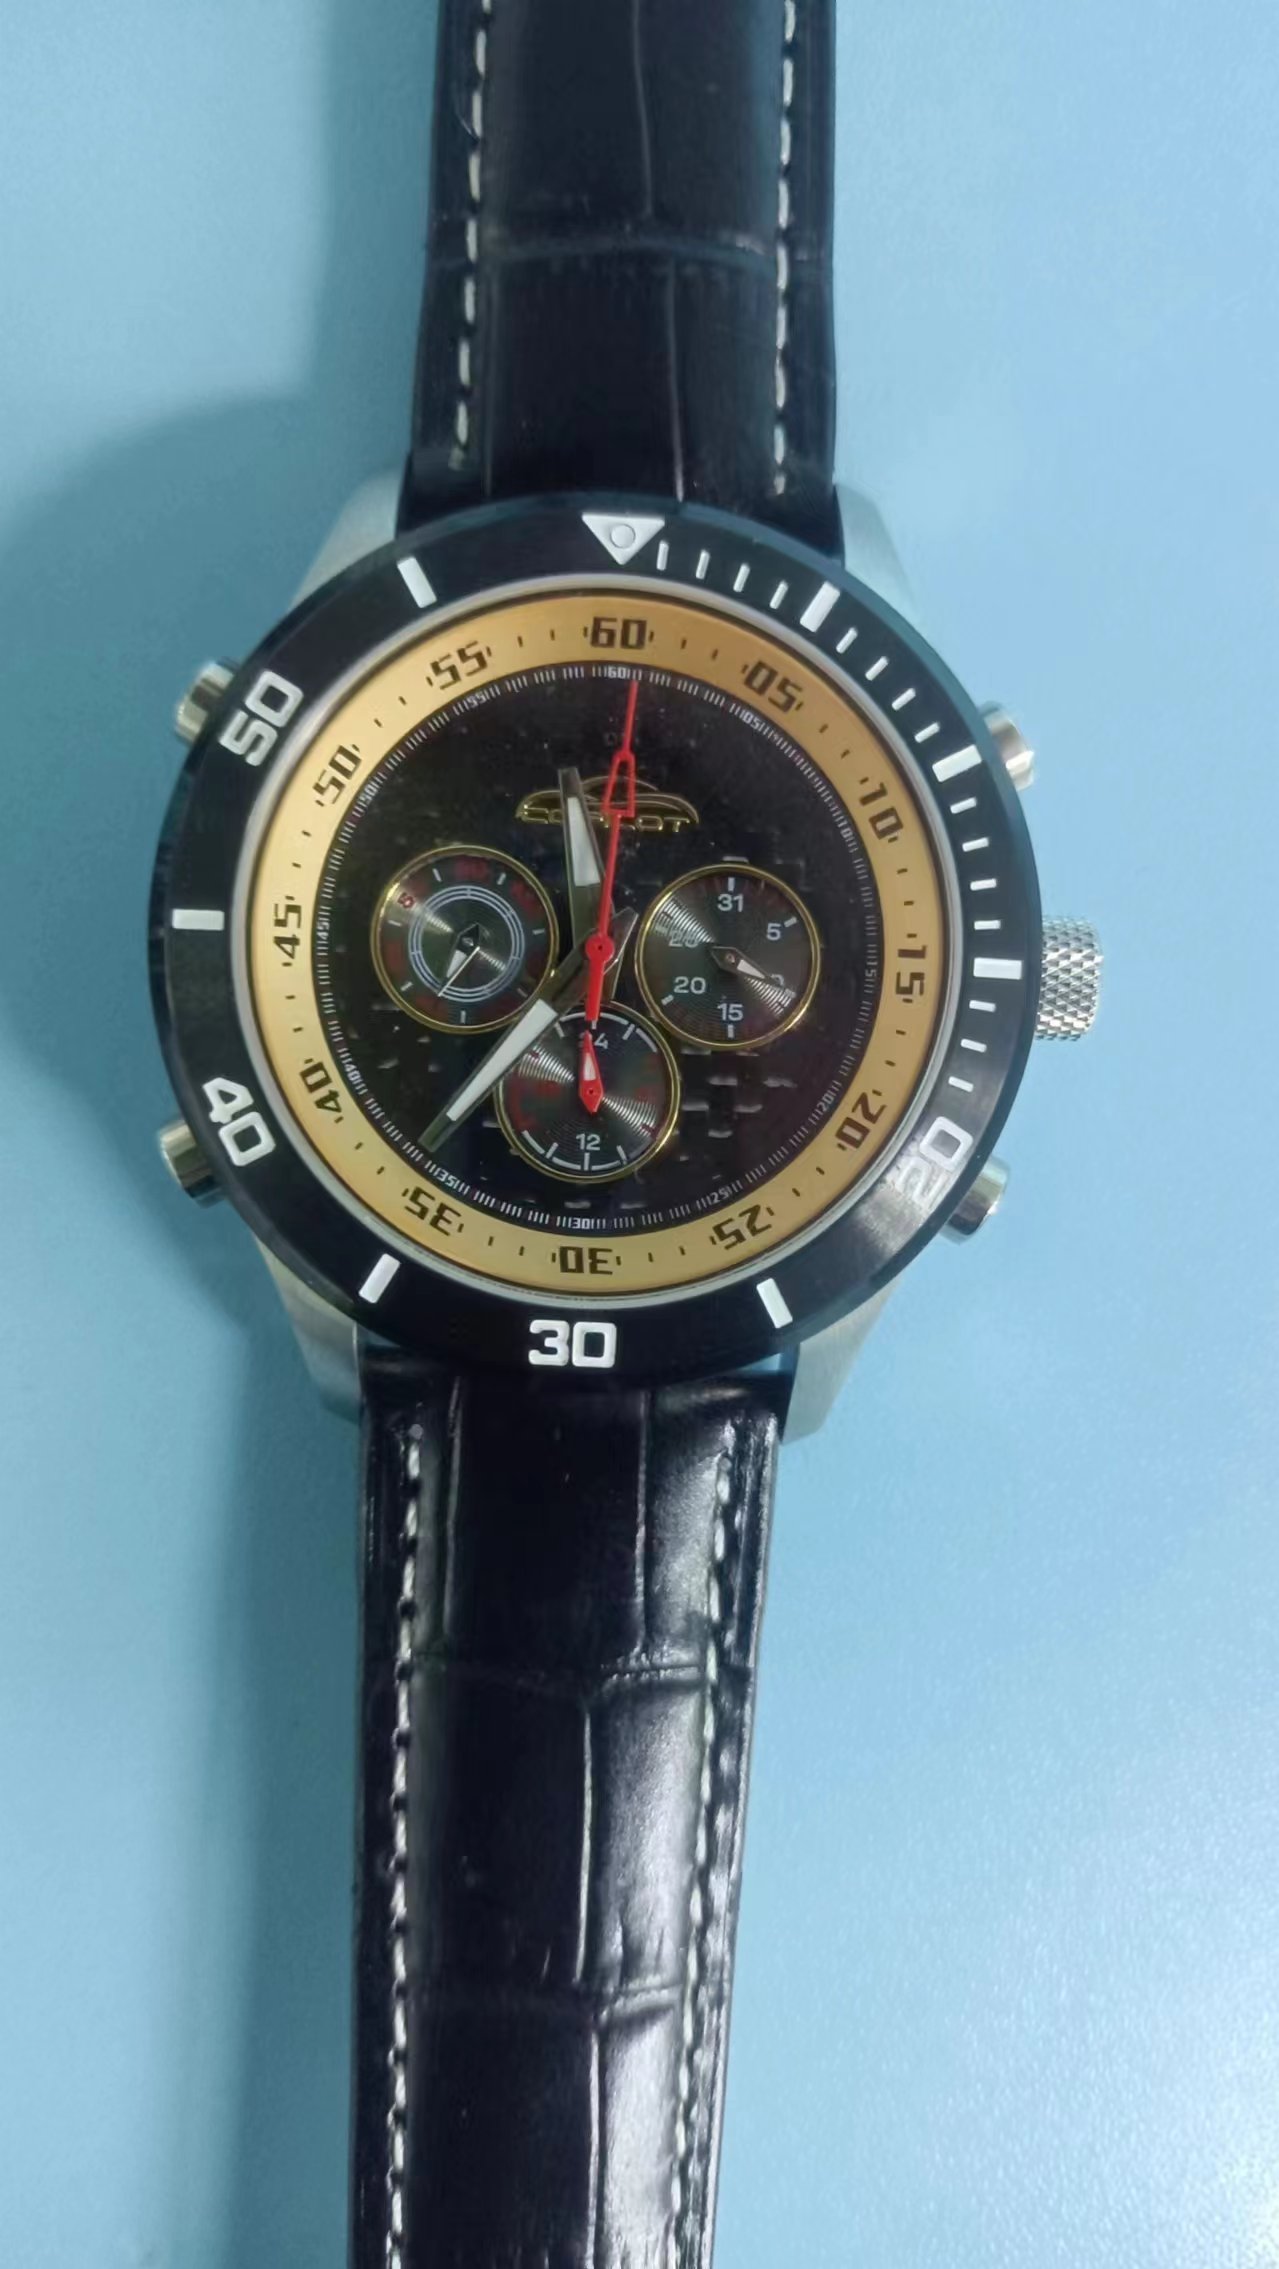 深圳市多功能钢表厂家供应多功能钢表  商务手表  礼品记念手表   男士手表  女士韩流手表